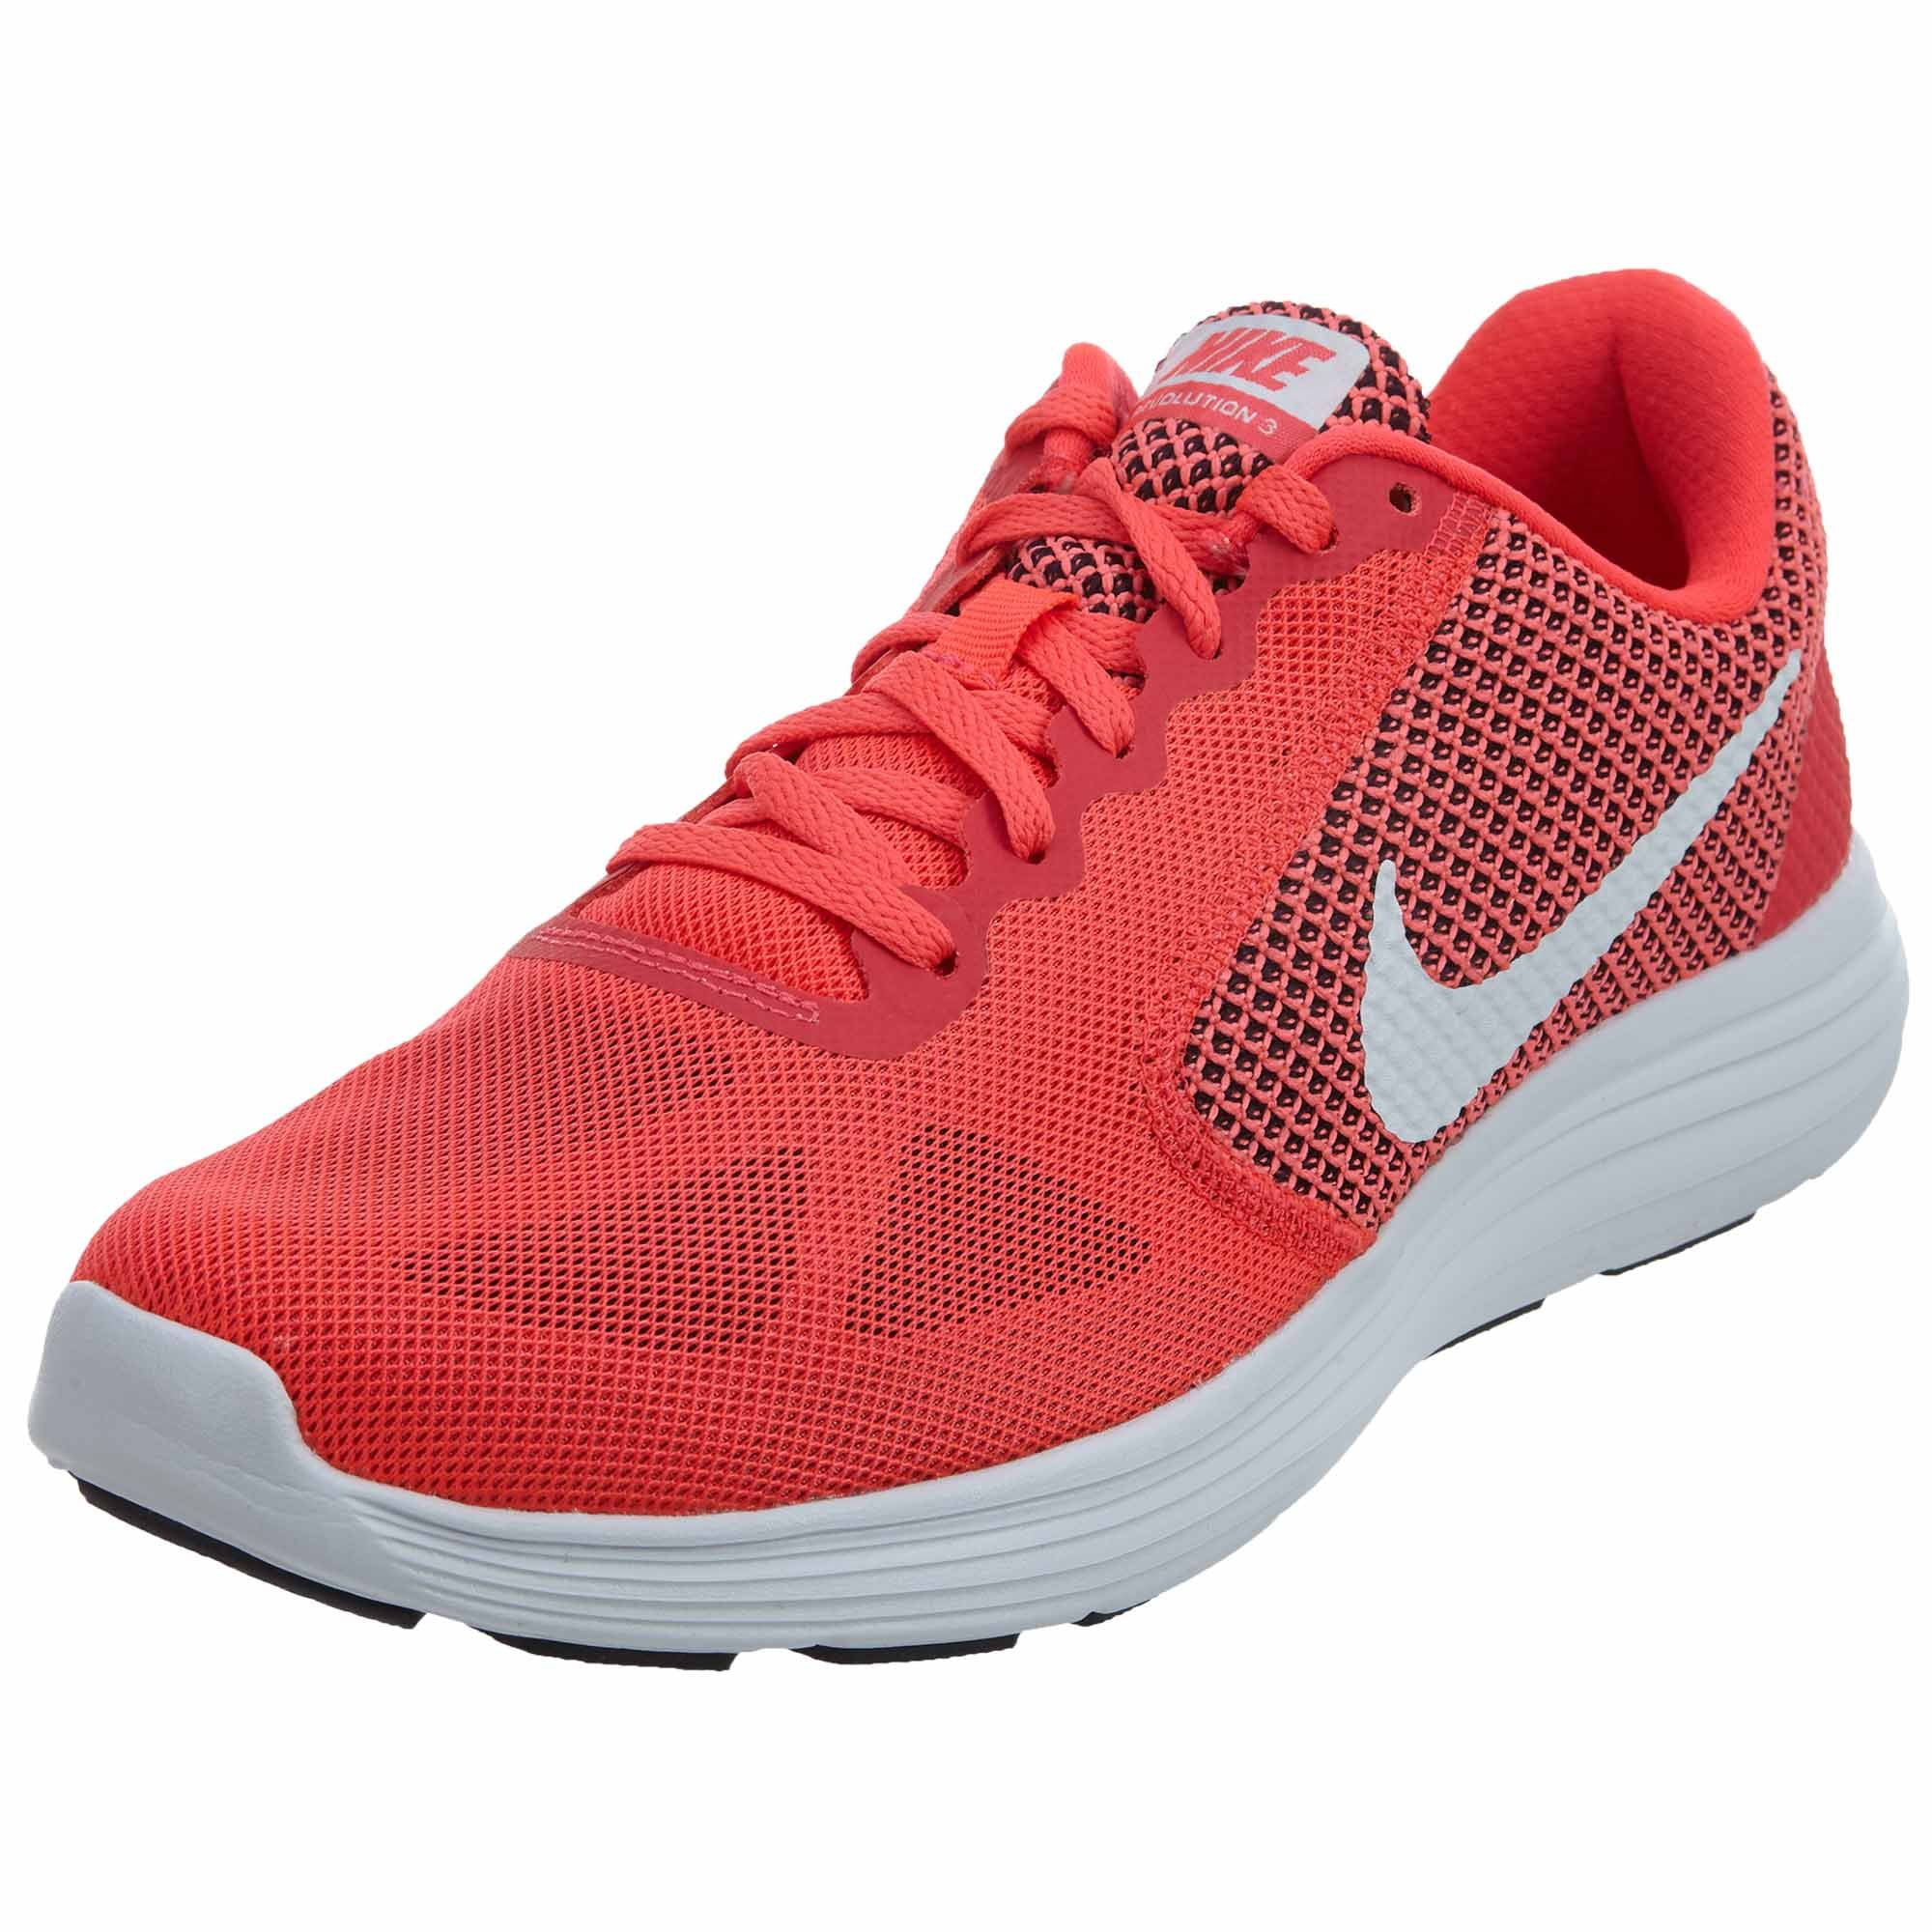 Найк революшен. Nike Revolution 3. Nike Invisible Run 3 Red. Найк революшен красные. Nike Revolution с замочком.